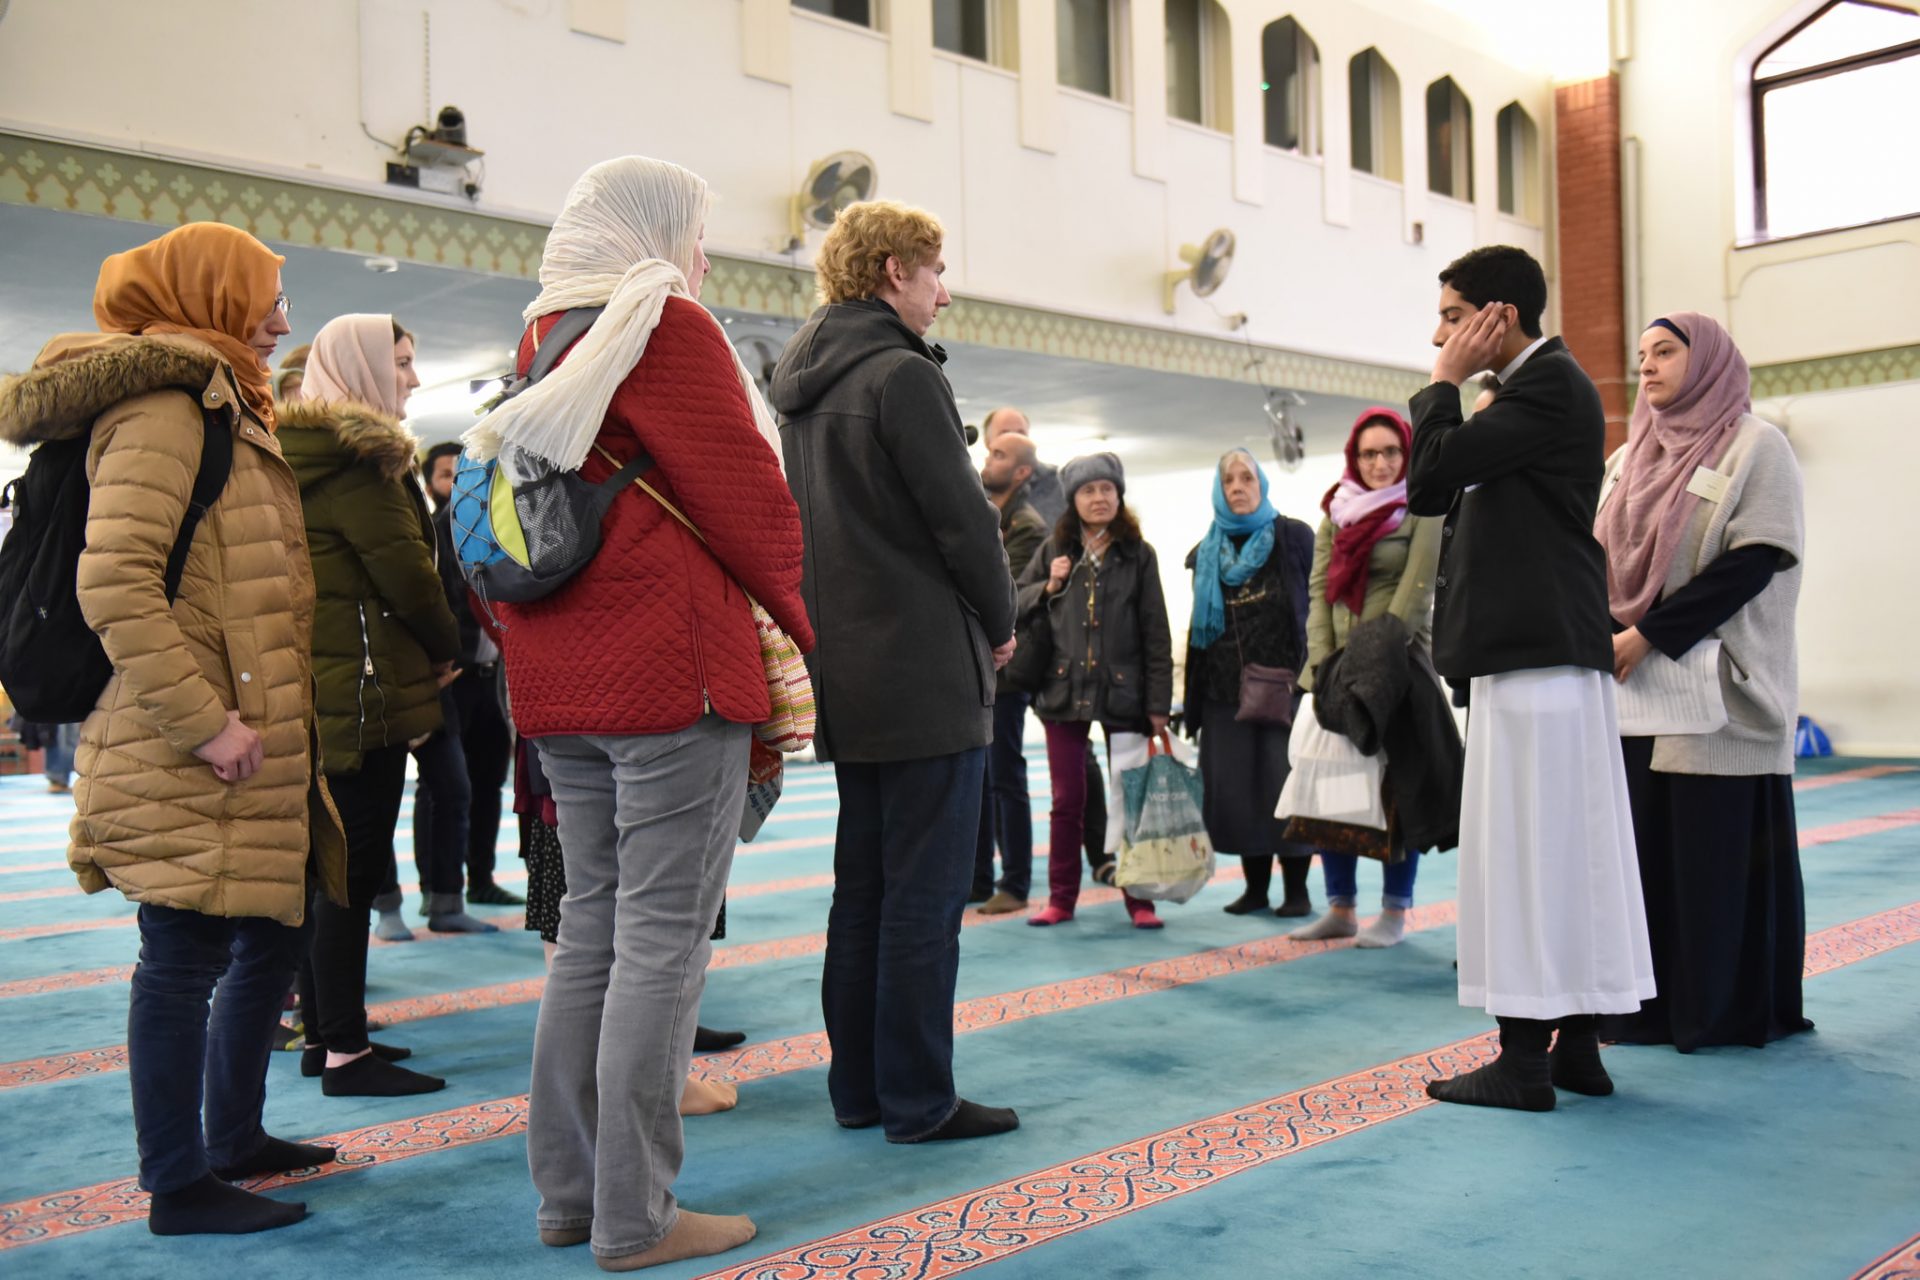 virtual mosque tour uk